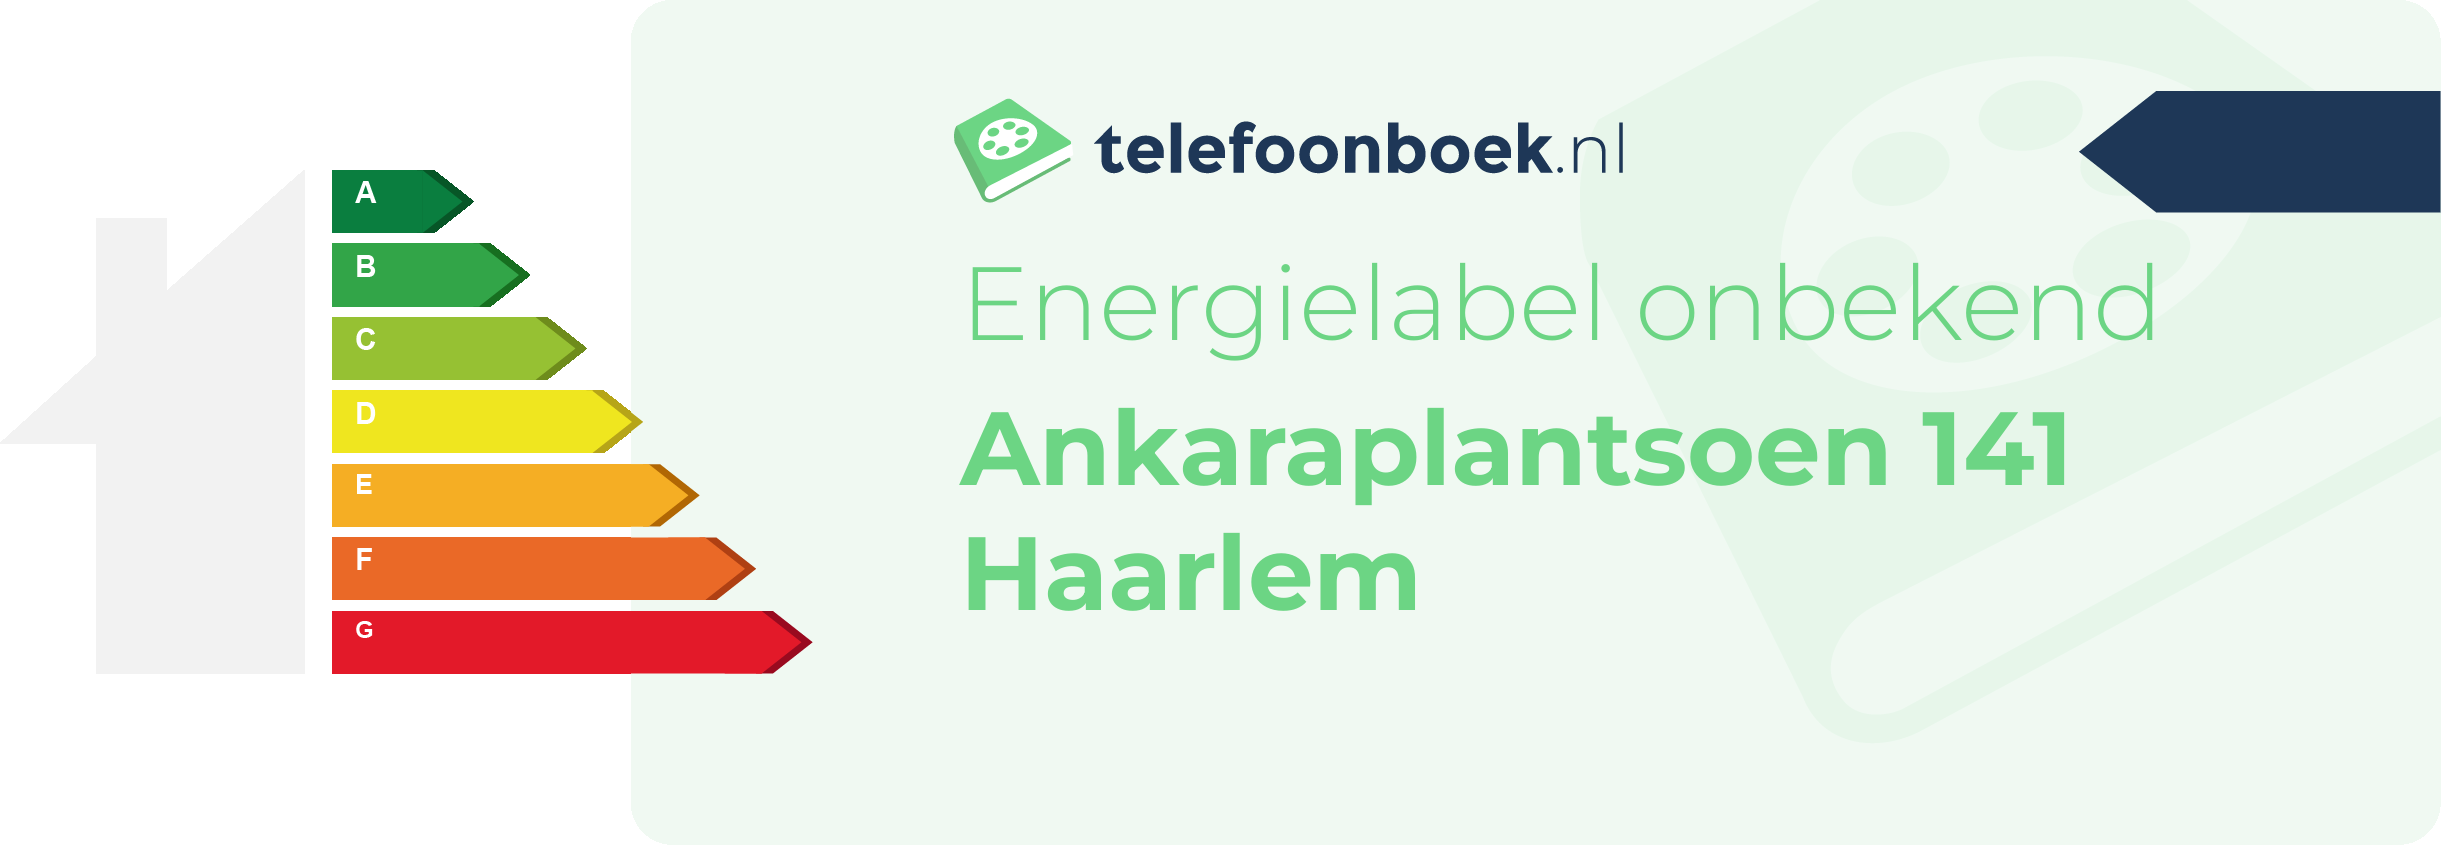 Energielabel Ankaraplantsoen 141 Haarlem